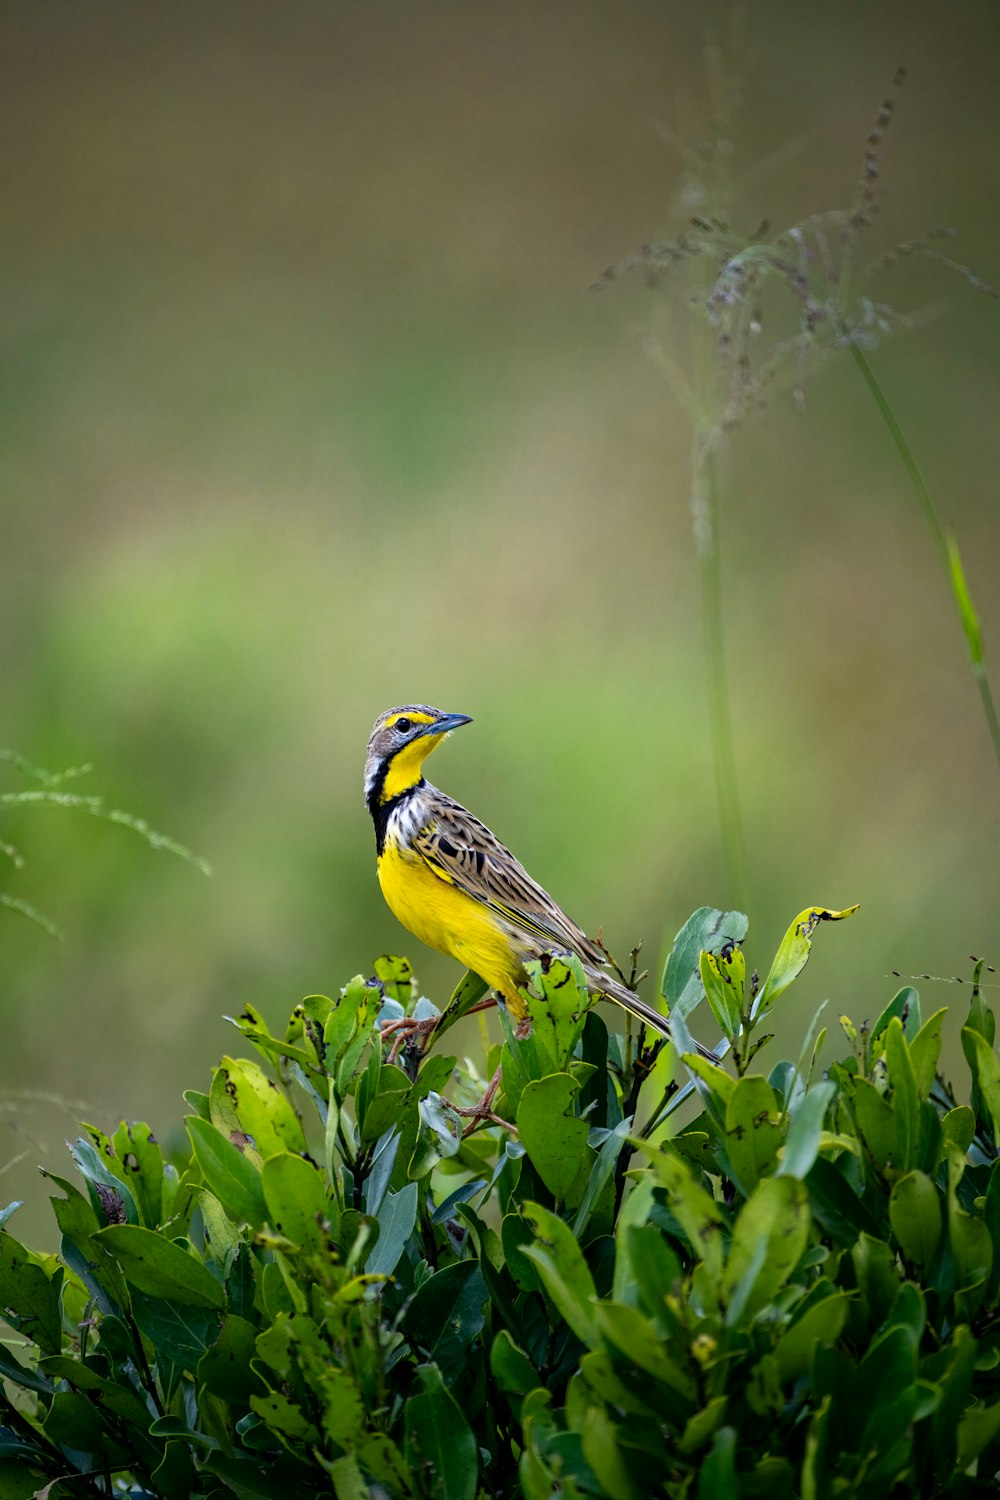 덤불 위에 앉아있는 노란색과 검은 색 새